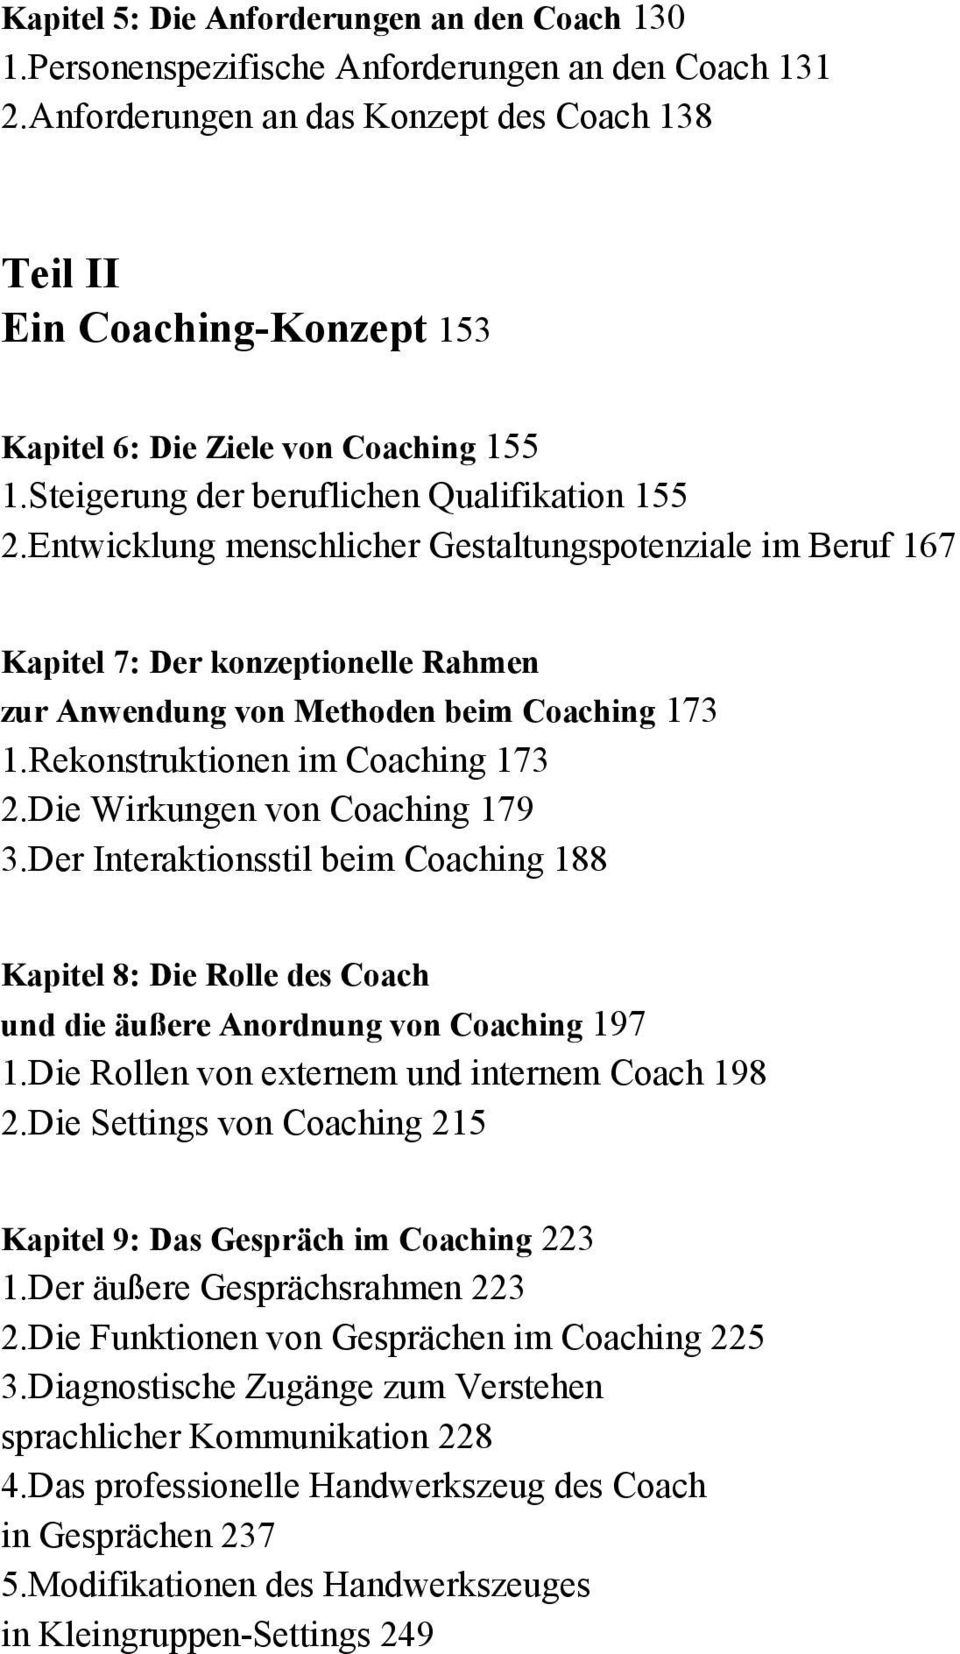 Entwicklung menschlicher Gestaltungspotenziale im Beruf 167 Kapitel 7: Der konzeptionelle Rahmen zur Anwendung von Methoden beim Coaching 173 1.Rekonstruktionen im Coaching 173 2.